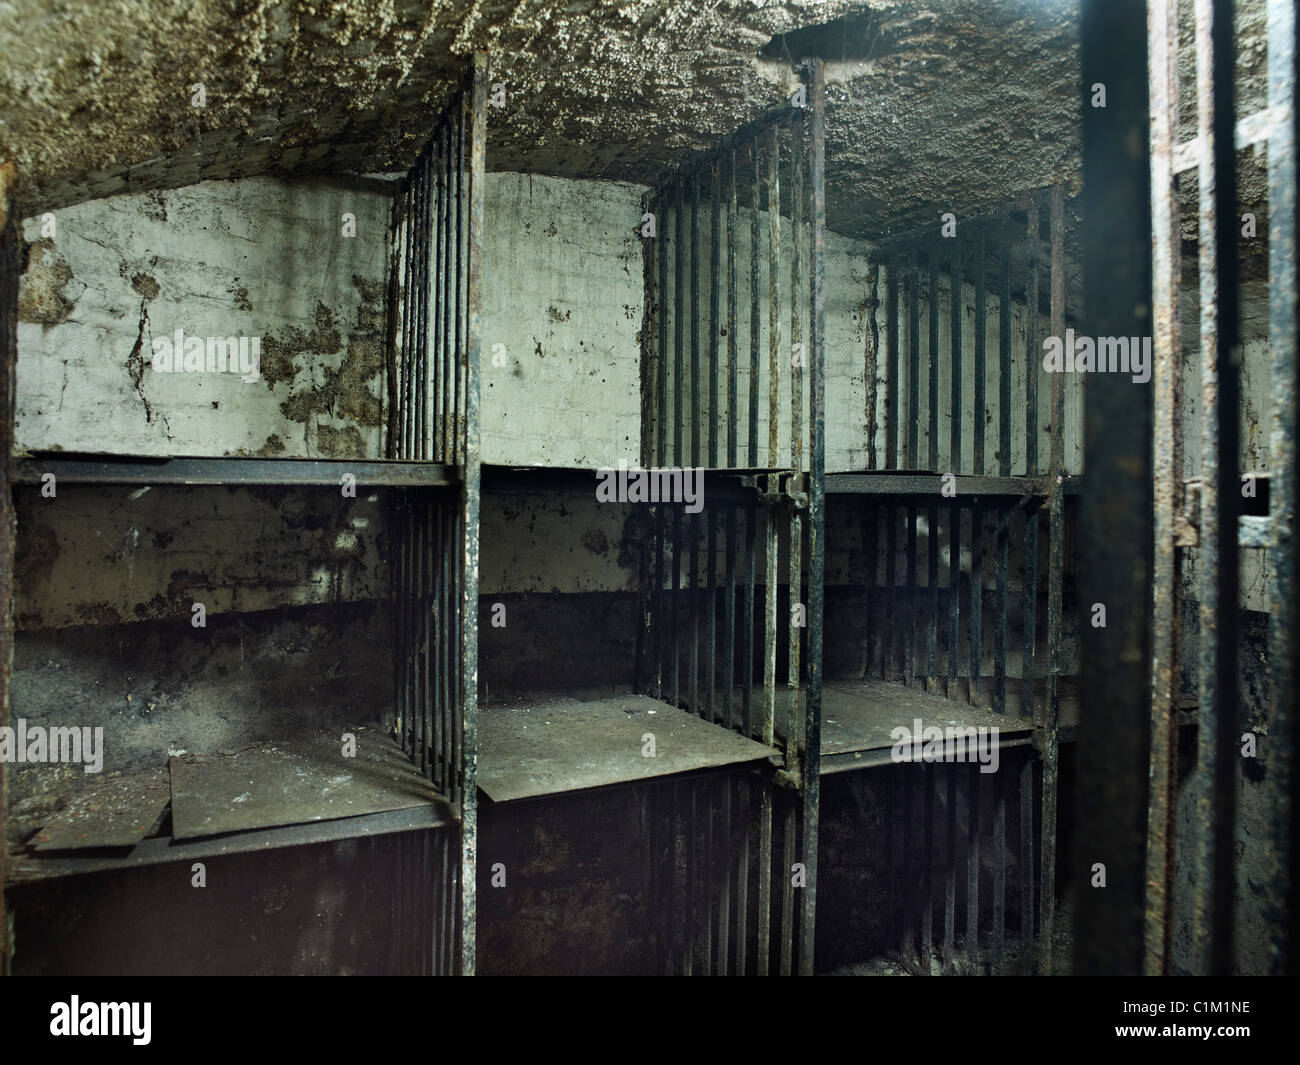 Las celdas de Newgate Viaducto Tavern, de la ciudad de Londres. células fueron una vez parte de Giltspur Comptor, con jaulas metálicas Foto de stock